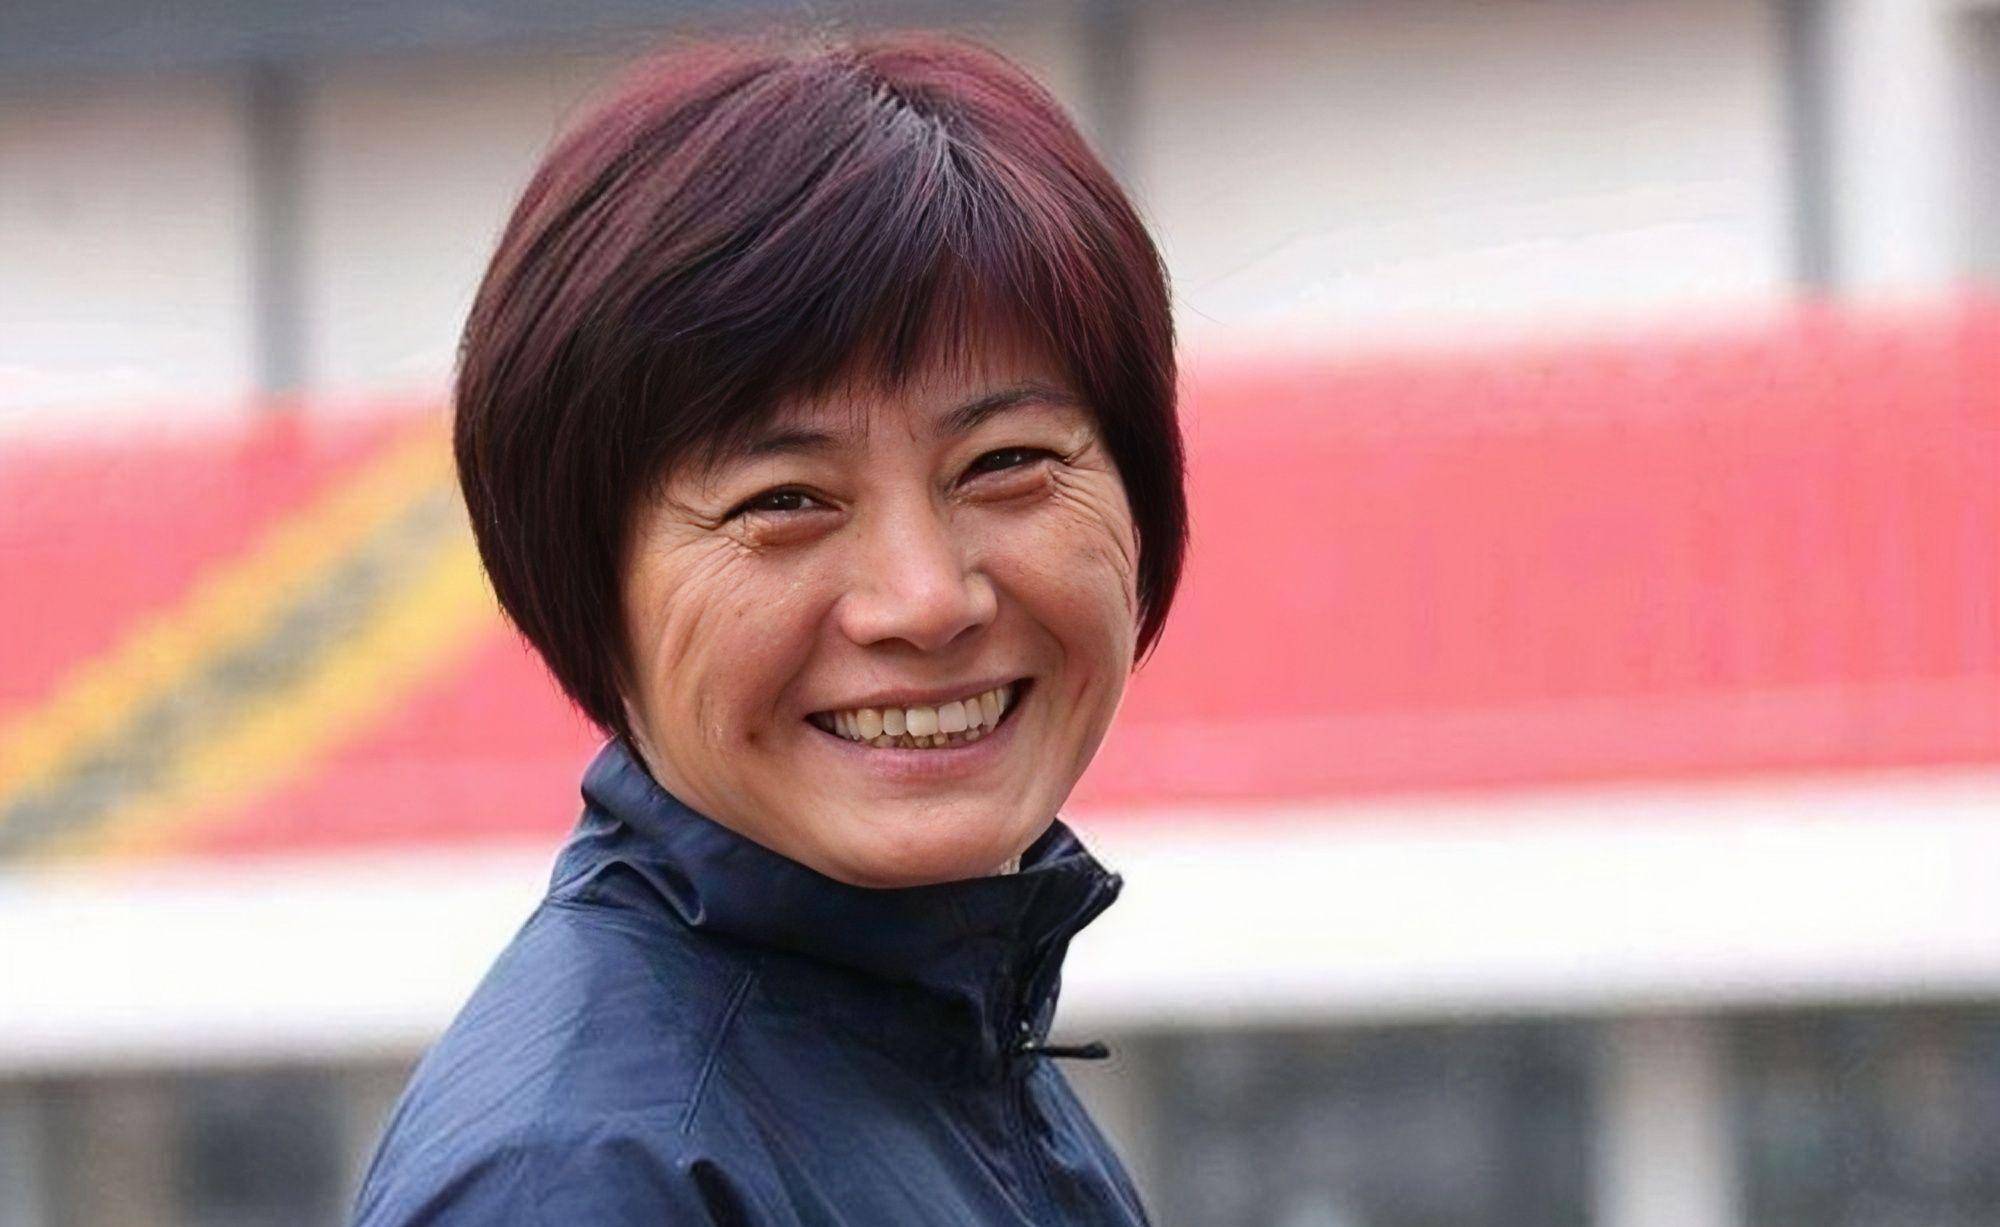 【168资讯】亚足联是坑中国女足吗 把水庆霞评为亚洲最佳教练